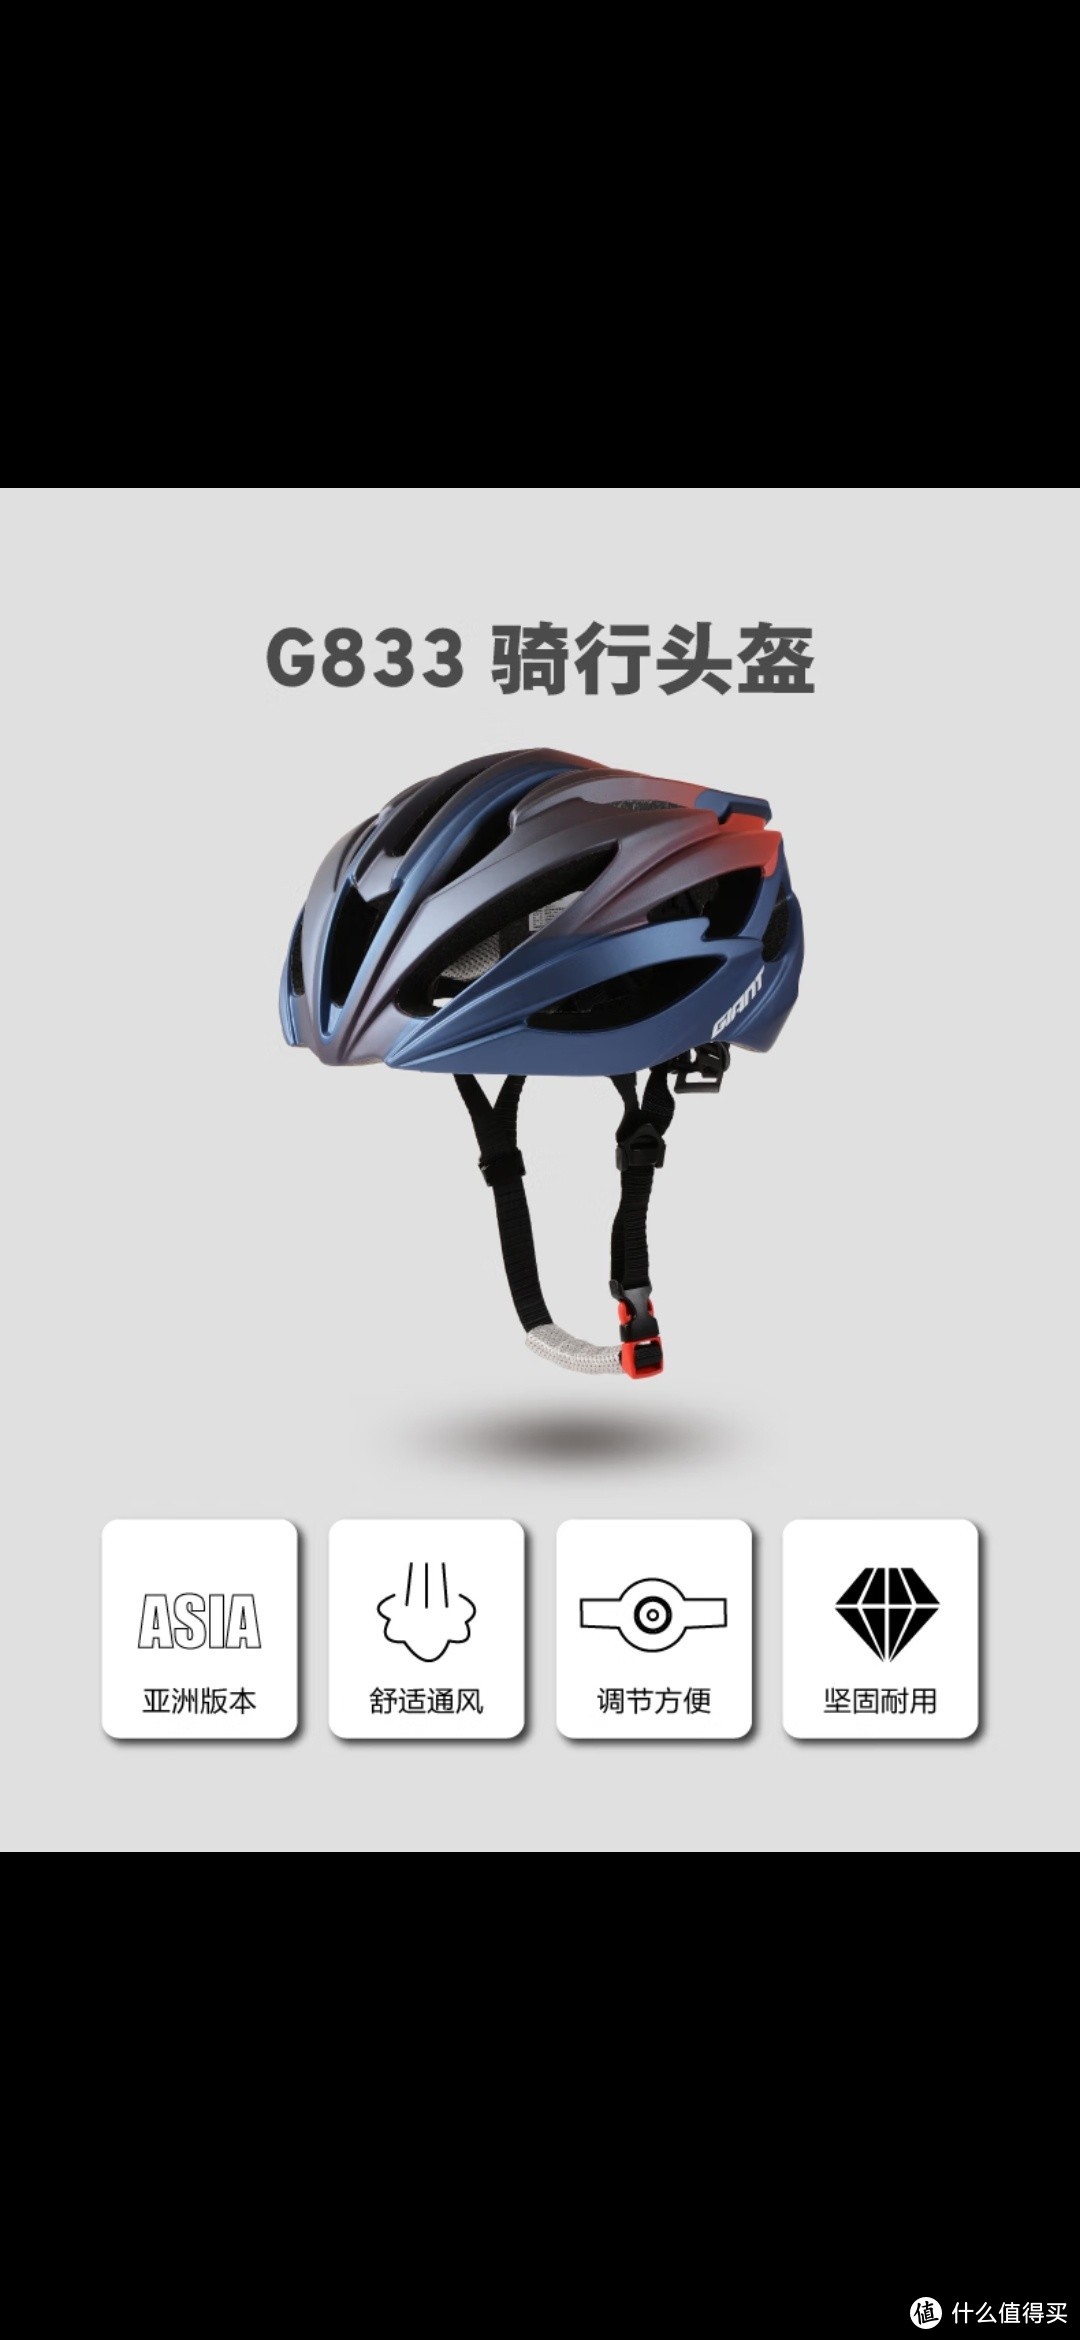 破风骑行-破风的同时，安全最重要！捷安特G833头盔，真的棒！